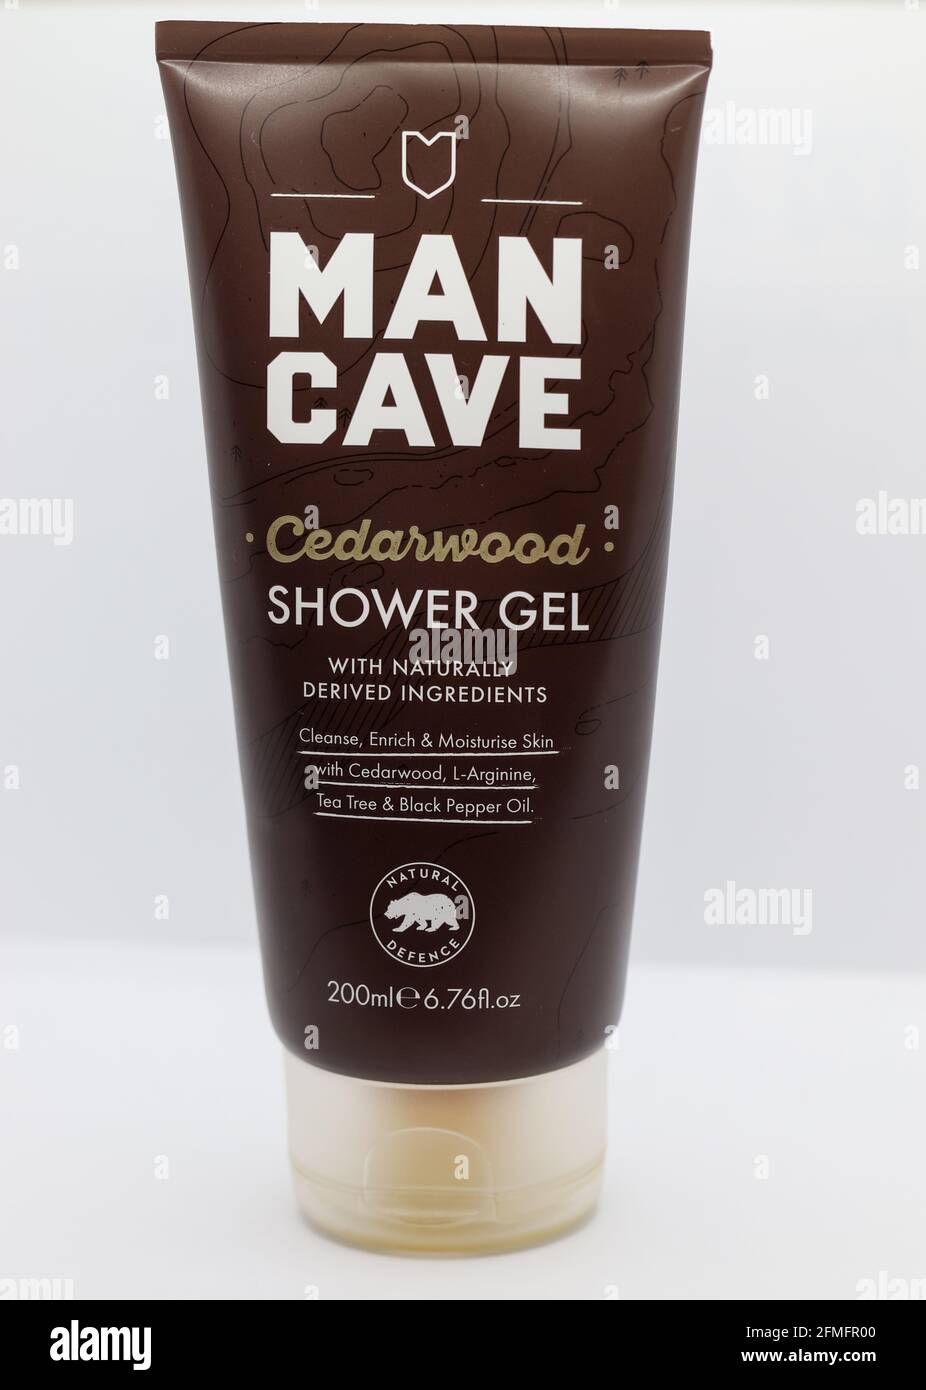 CHESTER, REGNO UNITO: 1 MAGGIO 2021: Man Cave è un popolare marchio per la cura della pelle maschile comunemente trovato nel Regno Unito. Nella foto è raffigurato il gel doccia in legno di cedro Foto Stock